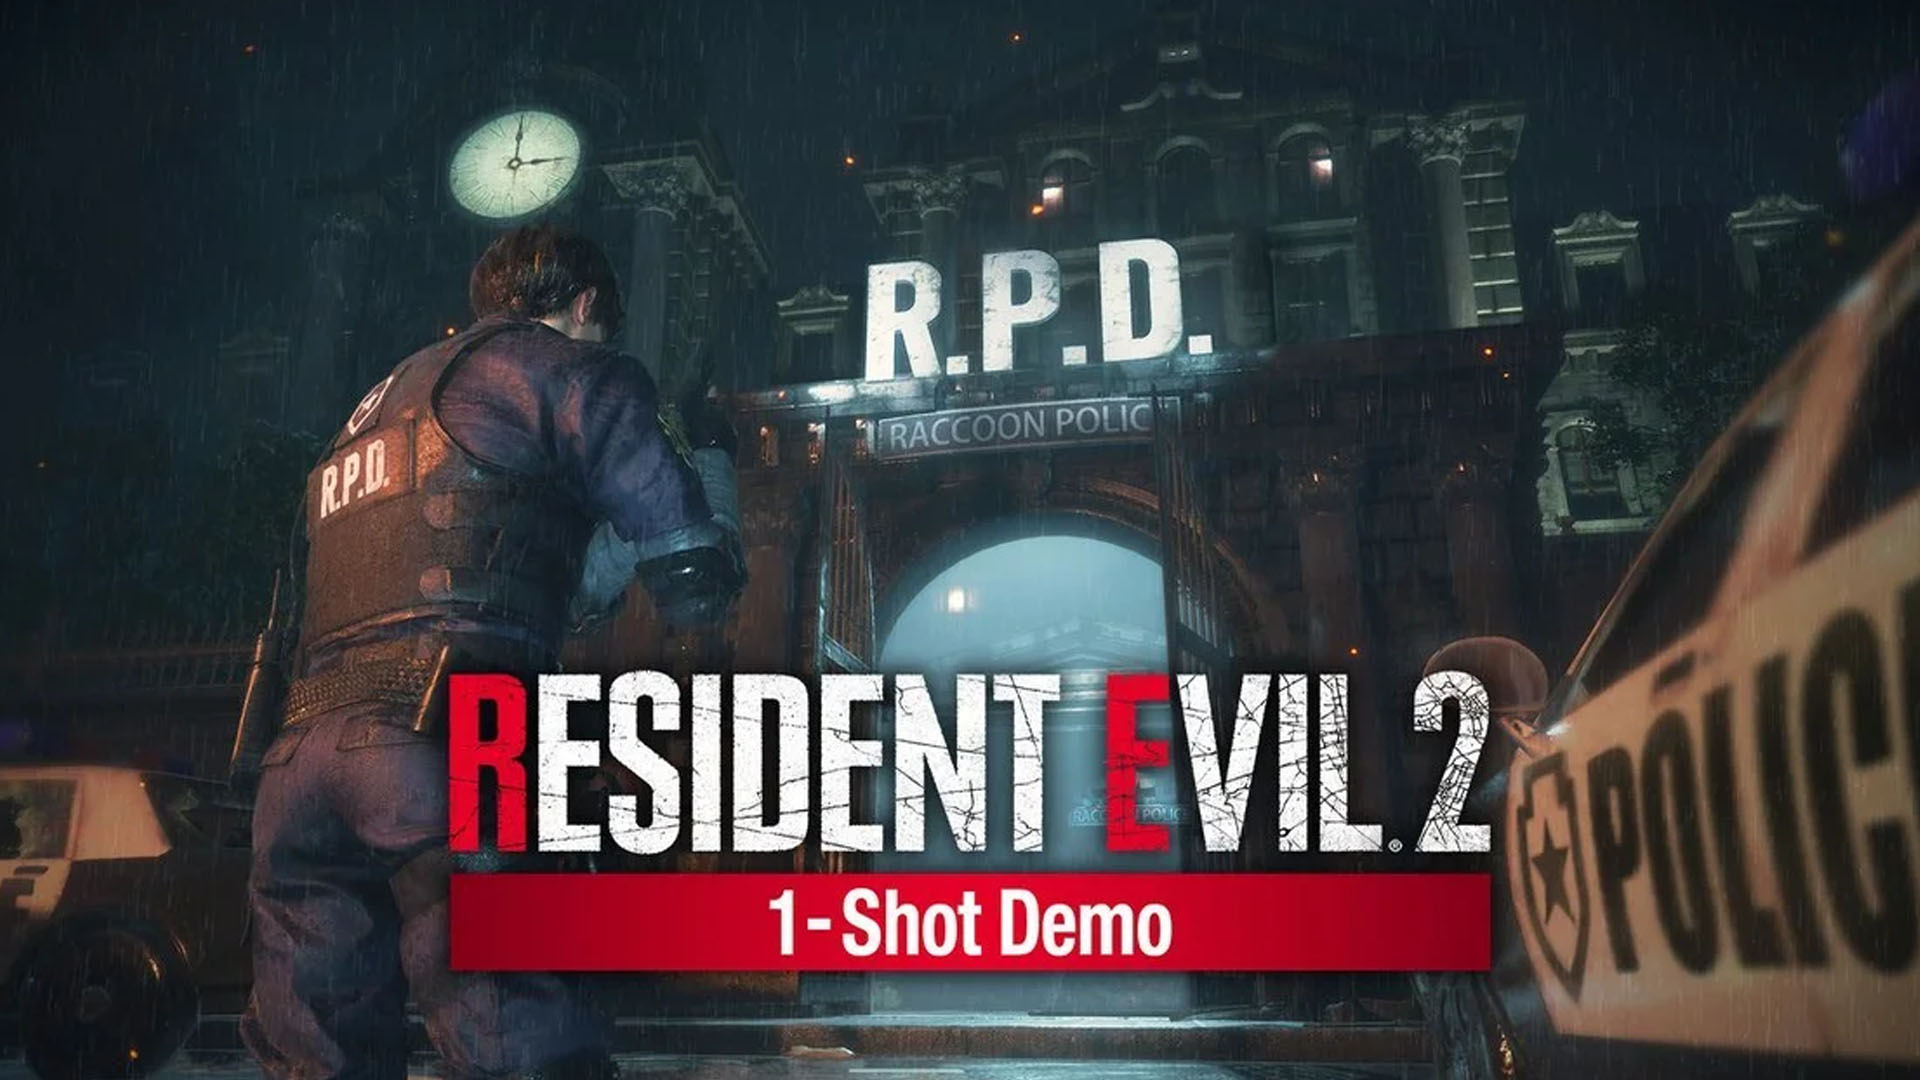 เดโม Resident Evil 2 Remake มียอดผู้เล่นมากกว่า 1 ล้านคนแล้ว